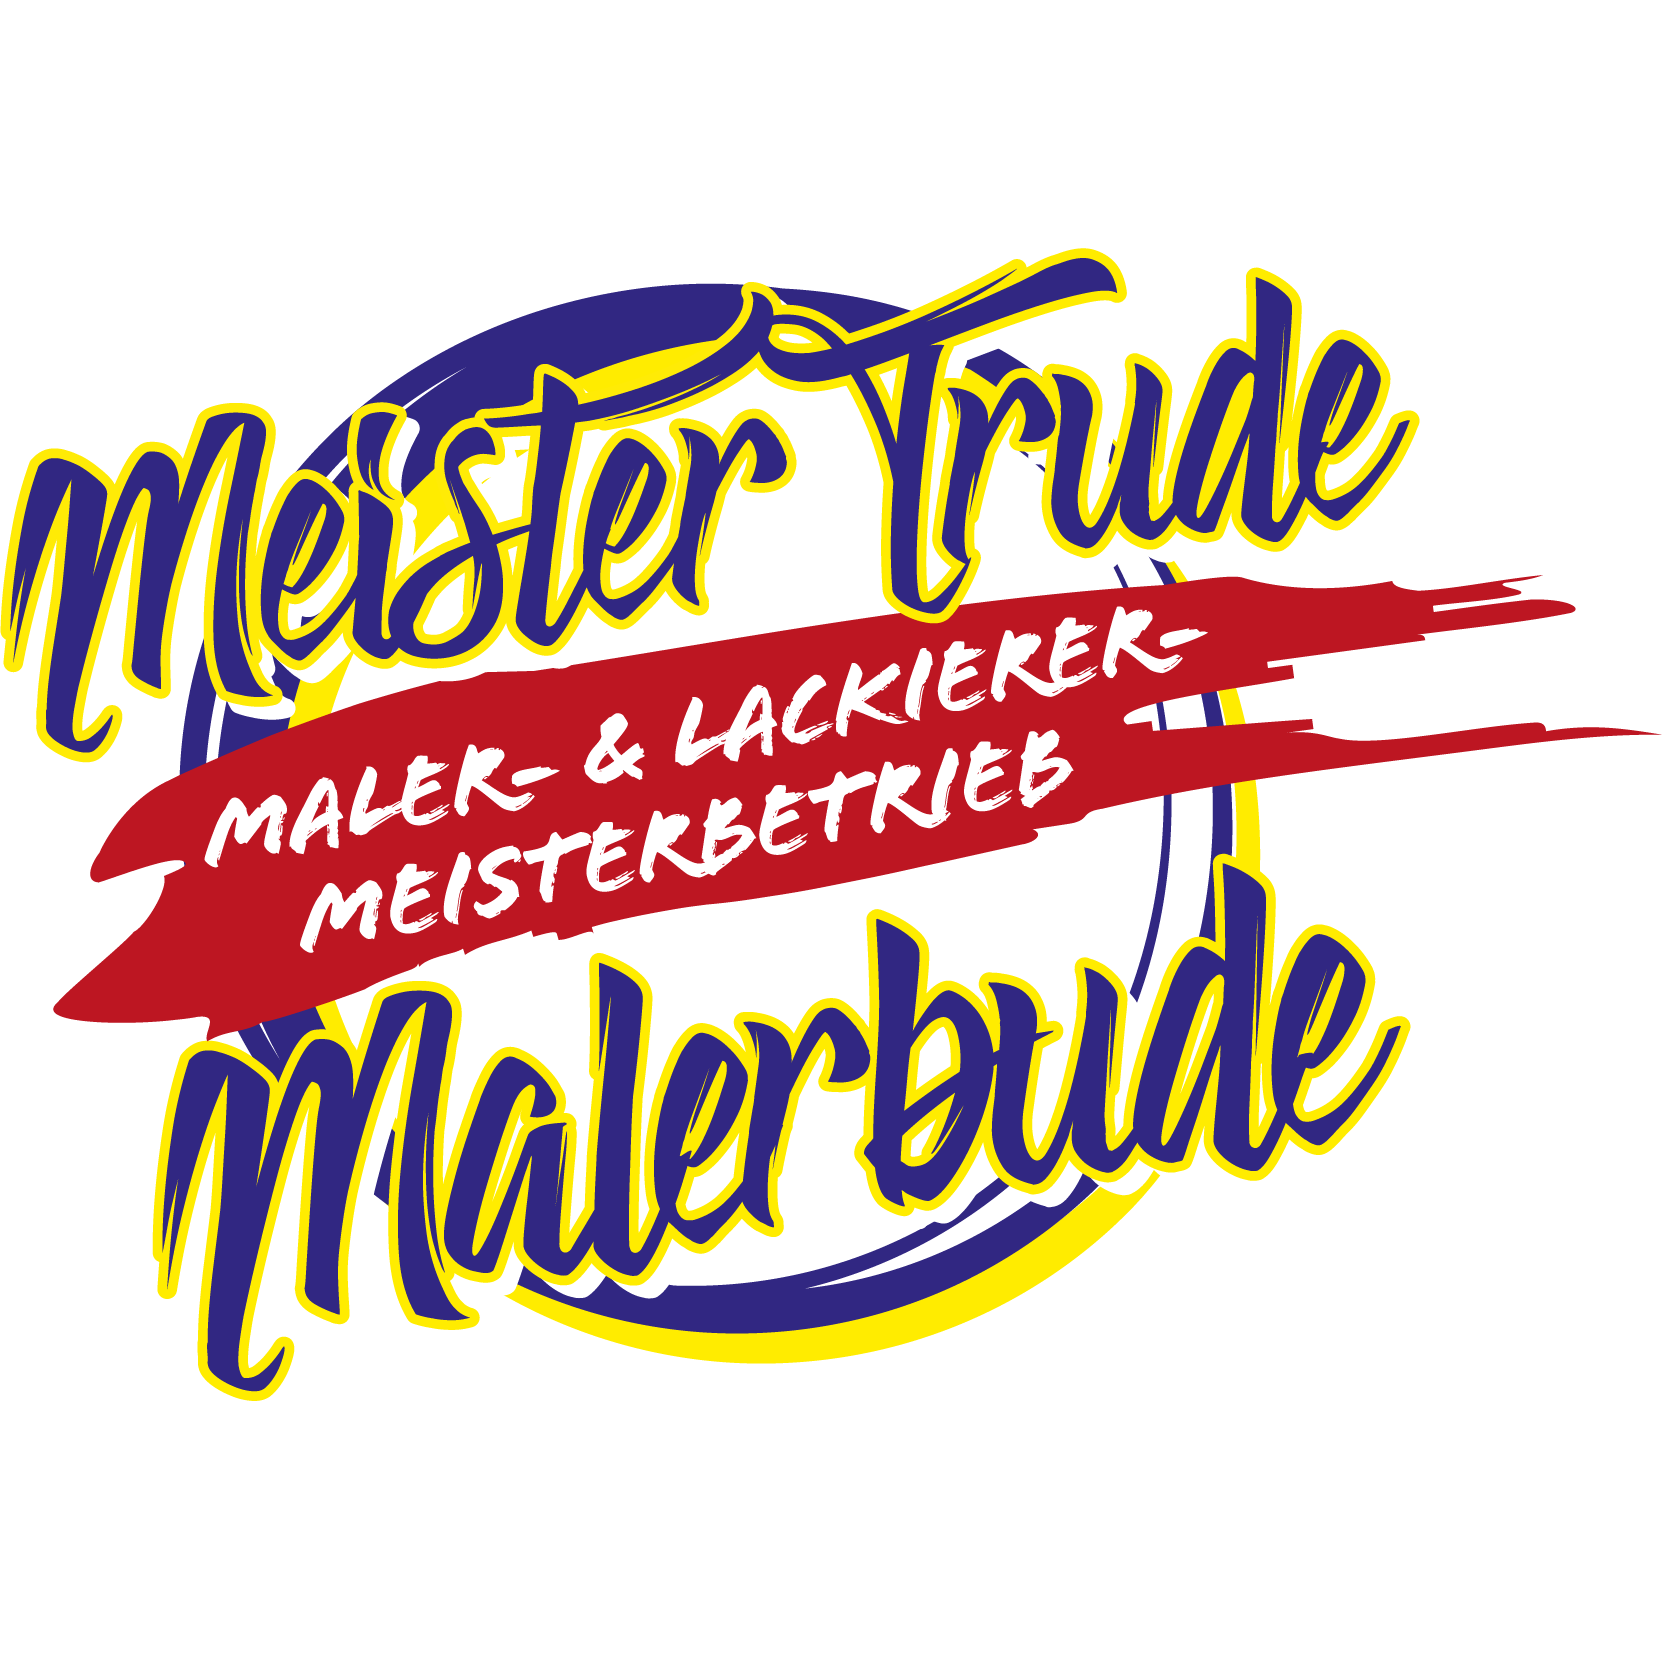 Logo Meister Trude Malerbude Logo